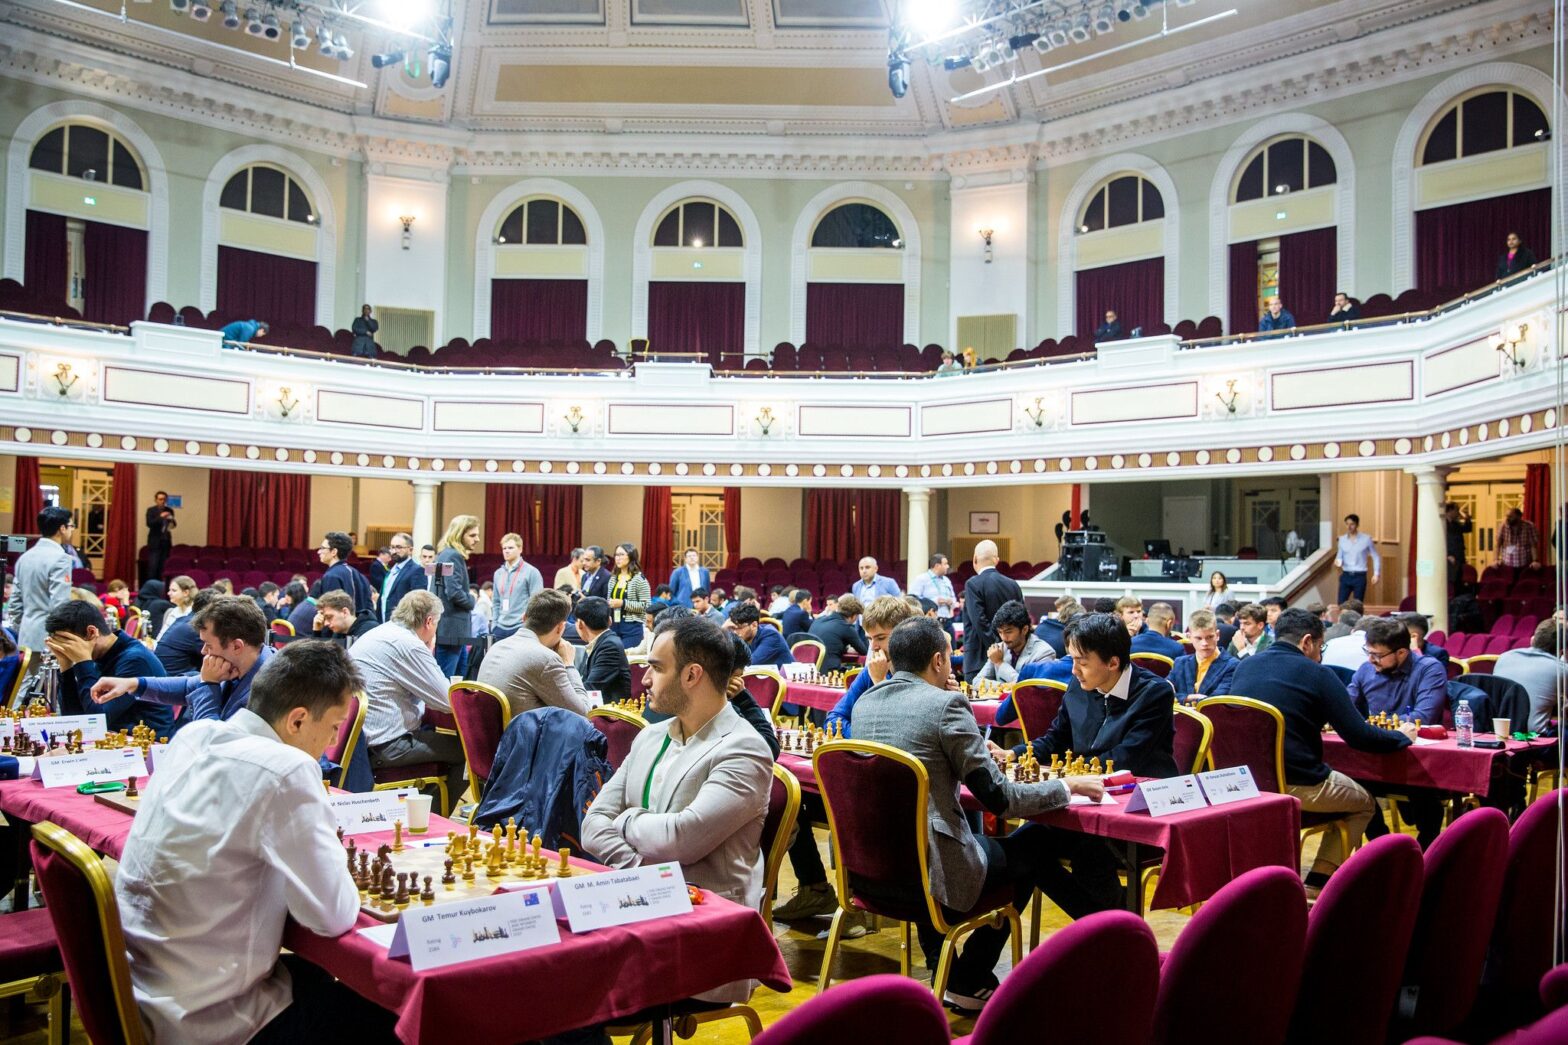 फिडे ग्रैंड स्विस शतरंज टूर्नामेंट में अर्जुन ने गुइजारो को हराया, नारायणन ने खेला ड्रॉ